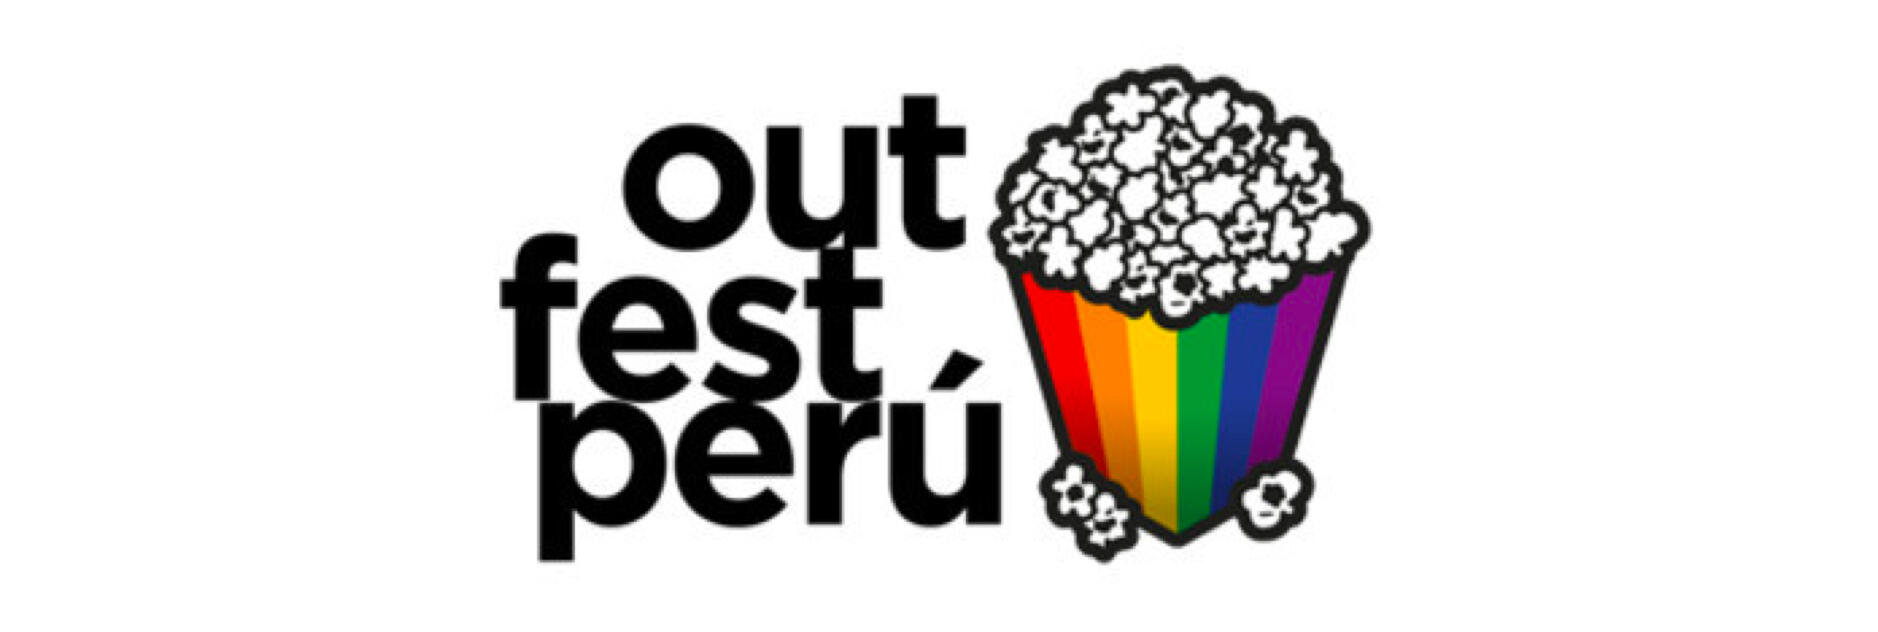 Outfest Peru